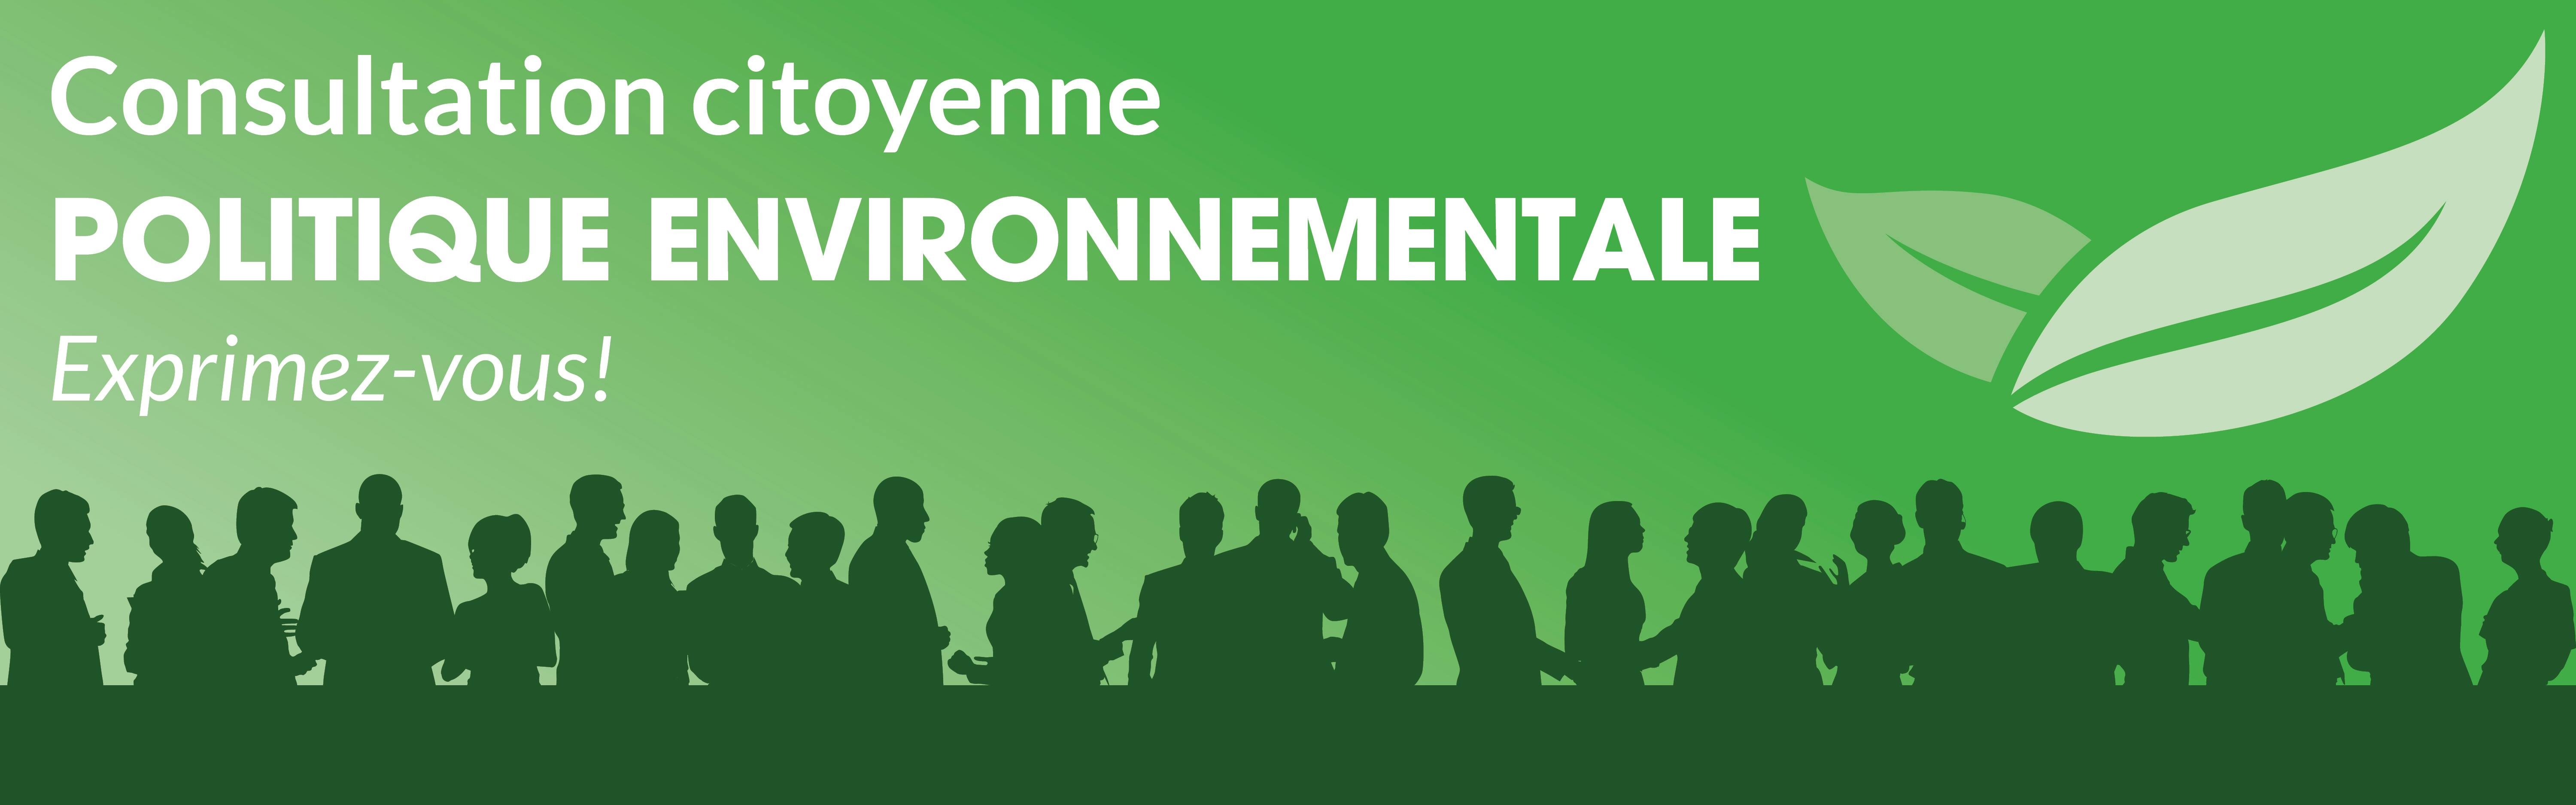 Consultation citoyenne - Politique environnementale